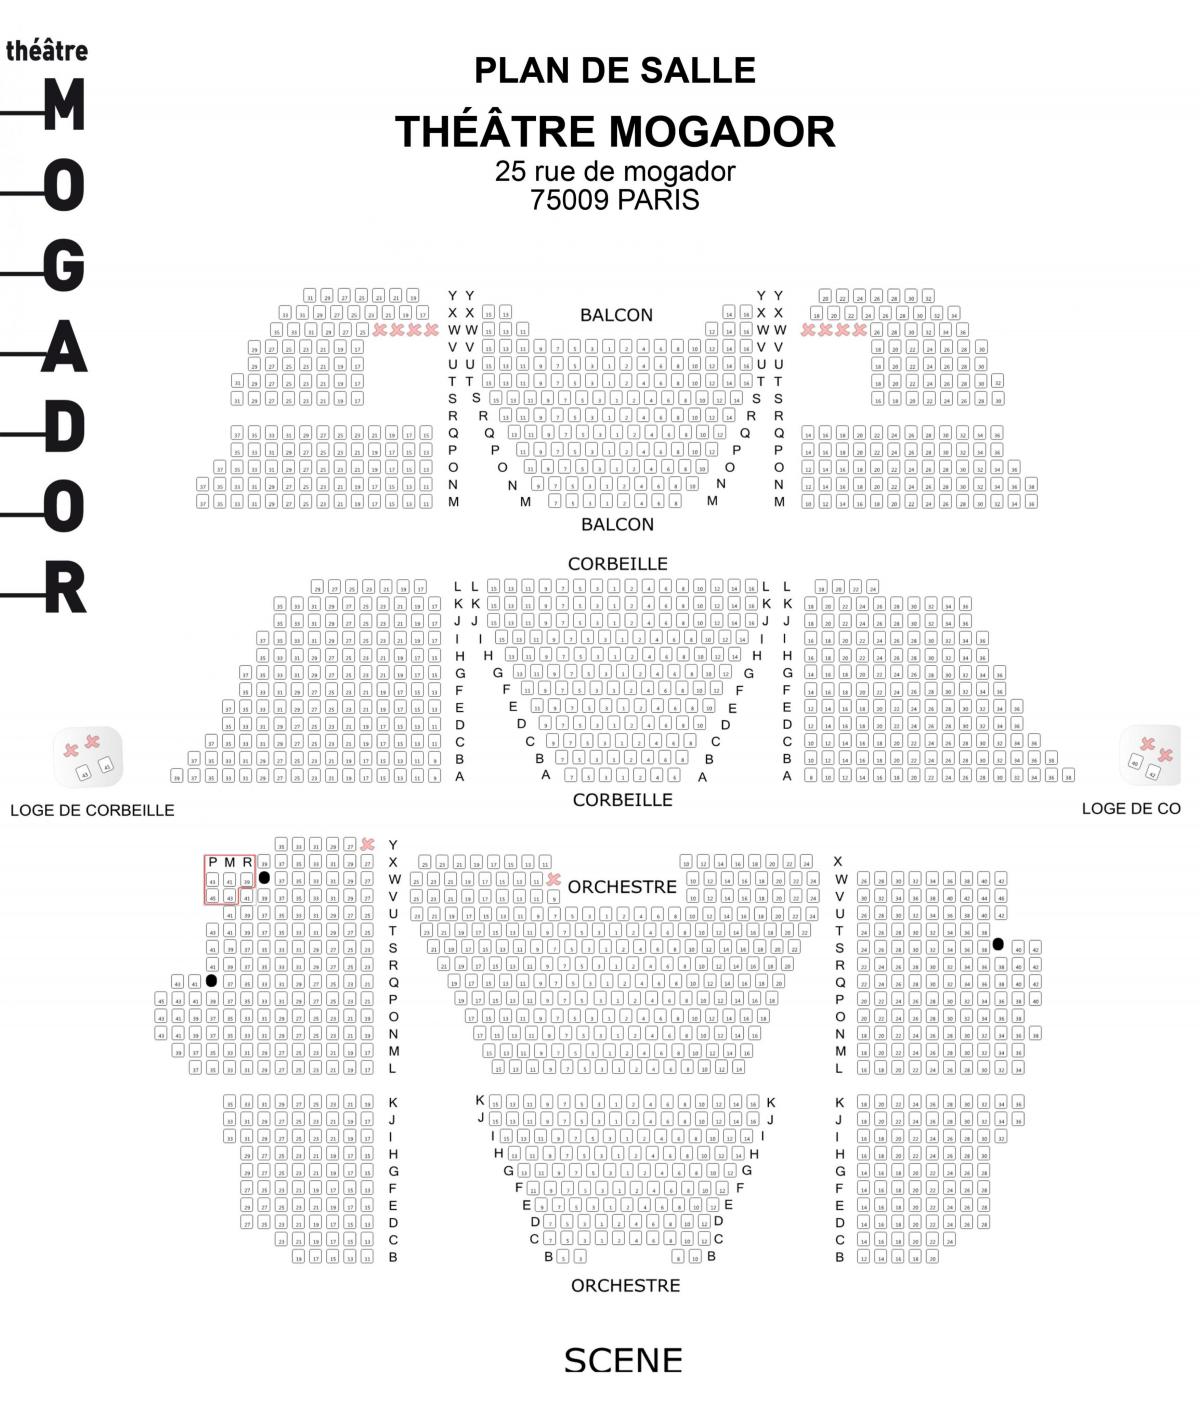 Zemljevid Théâtre Mogador